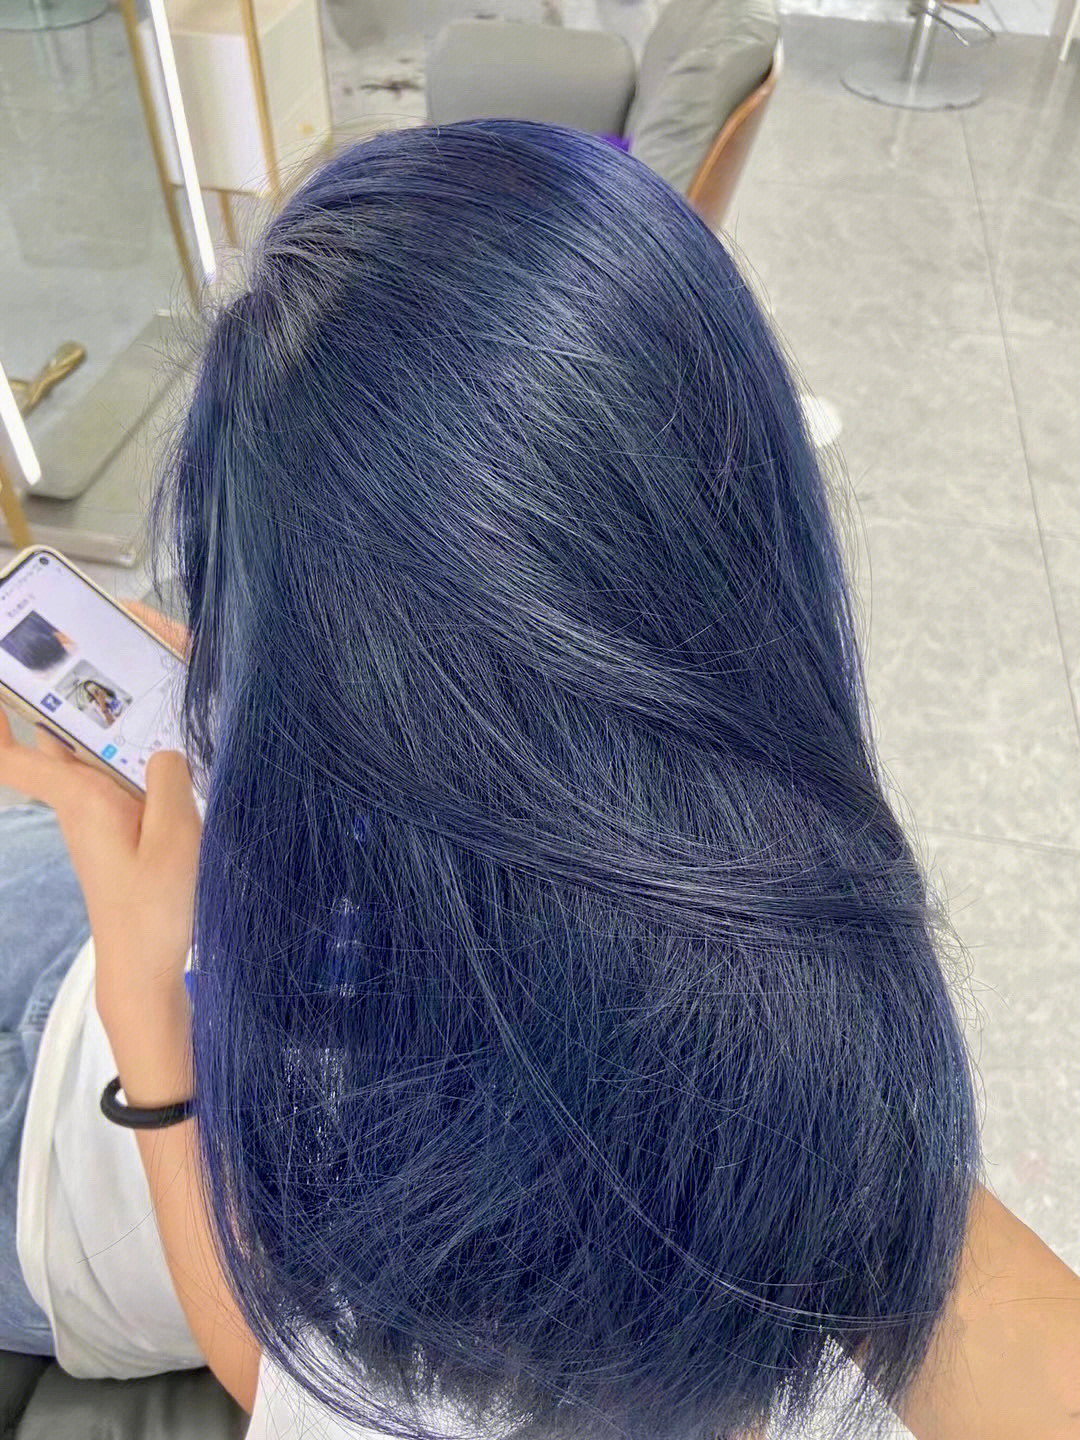 蓝灰色发色是今年特别流行的一种颜色,这个颜色是蓝色调中偏灰一点的